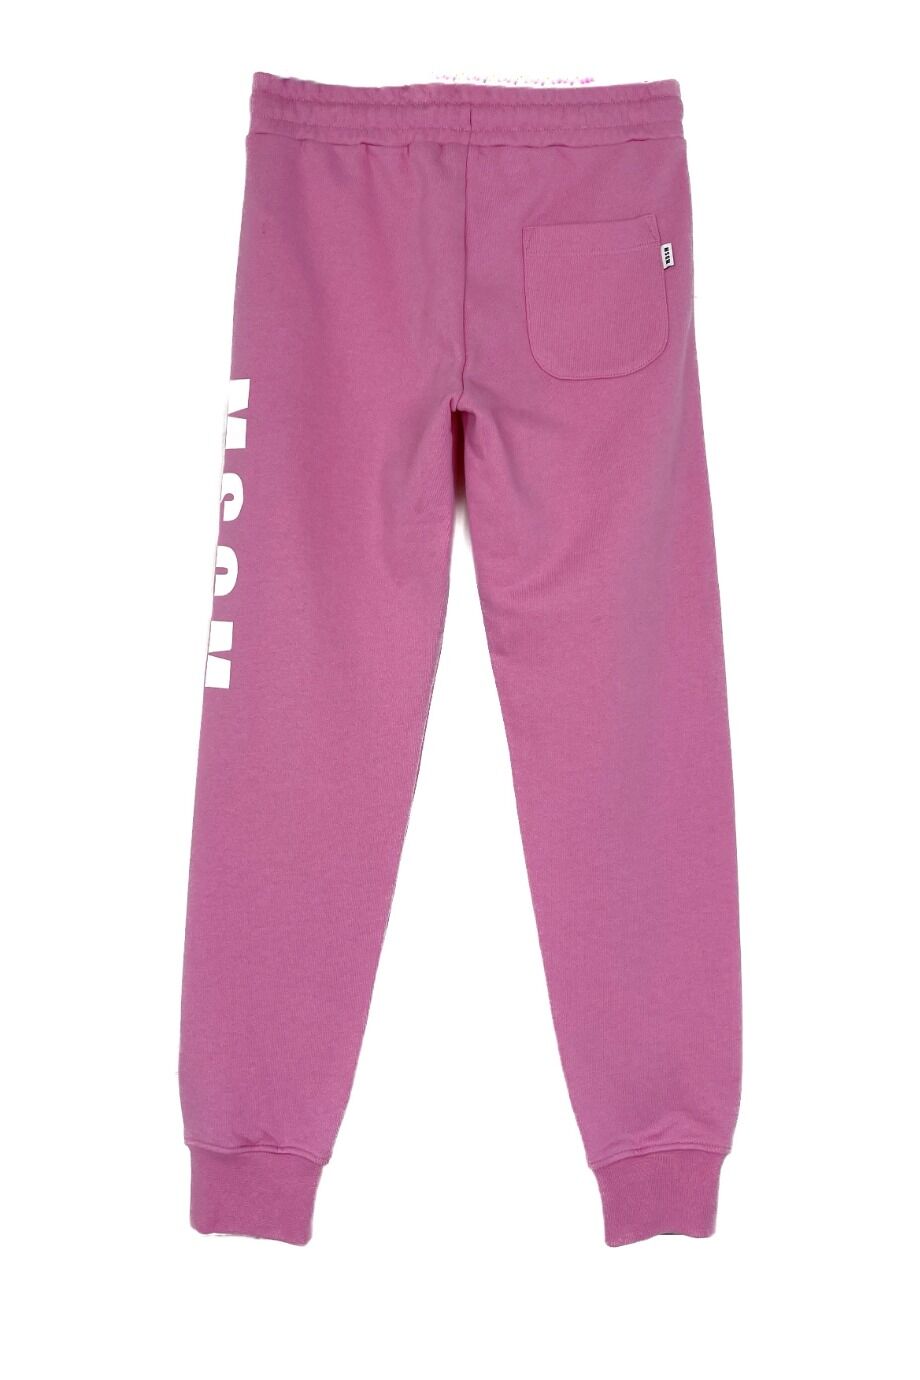 image 3 Детские спортивные брюки розового цвета с надписью